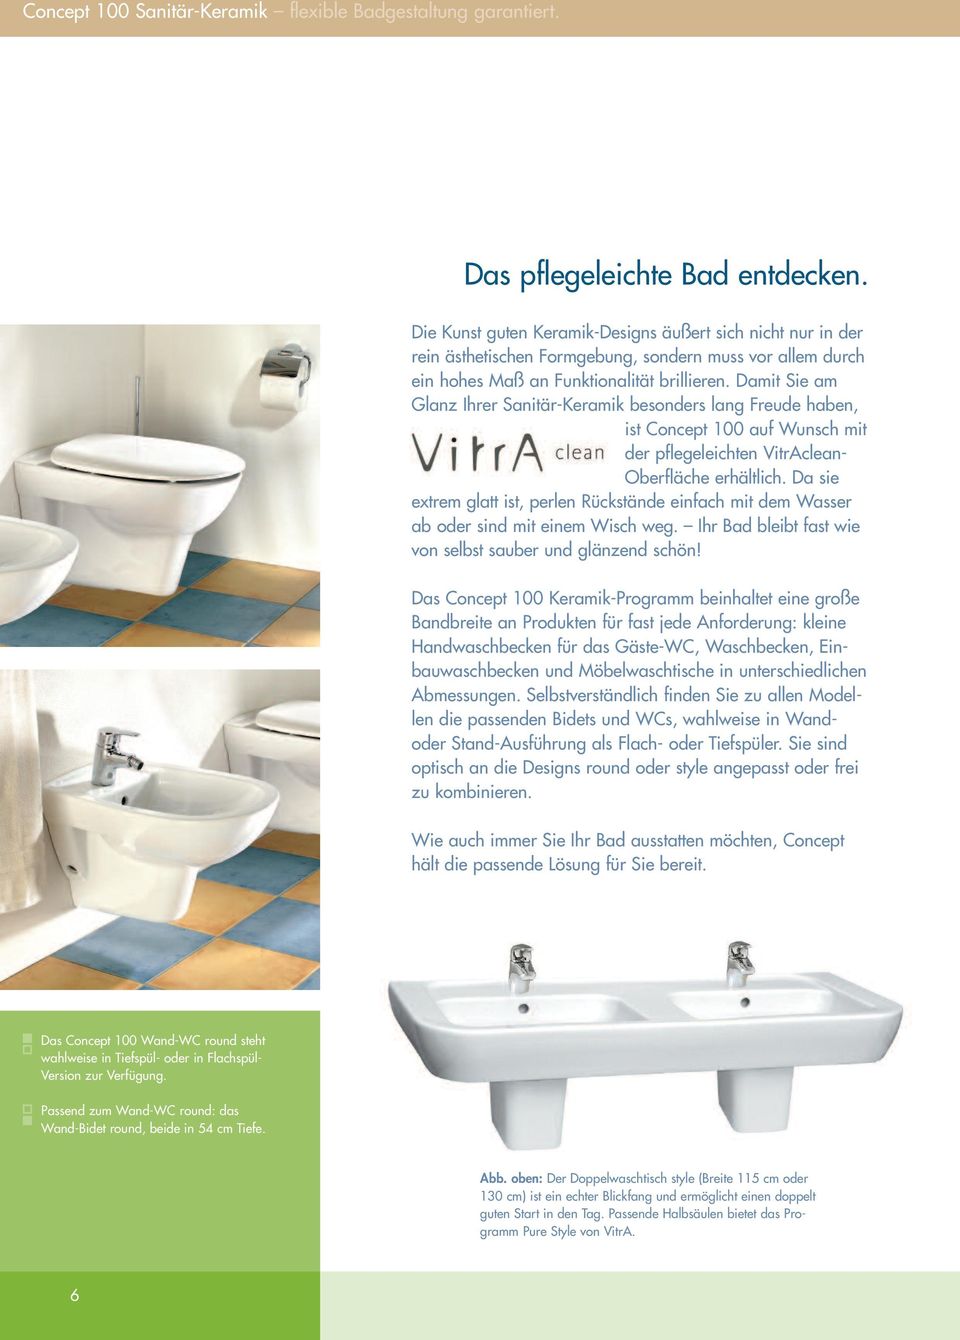 Damit Sie am Glanz Ihrer Sanitär-Keramik besonders lang Freude haben, ist Concept 100 auf Wunsch mit der pflegeleichten VitrAclean- Oberfläche erhältlich.